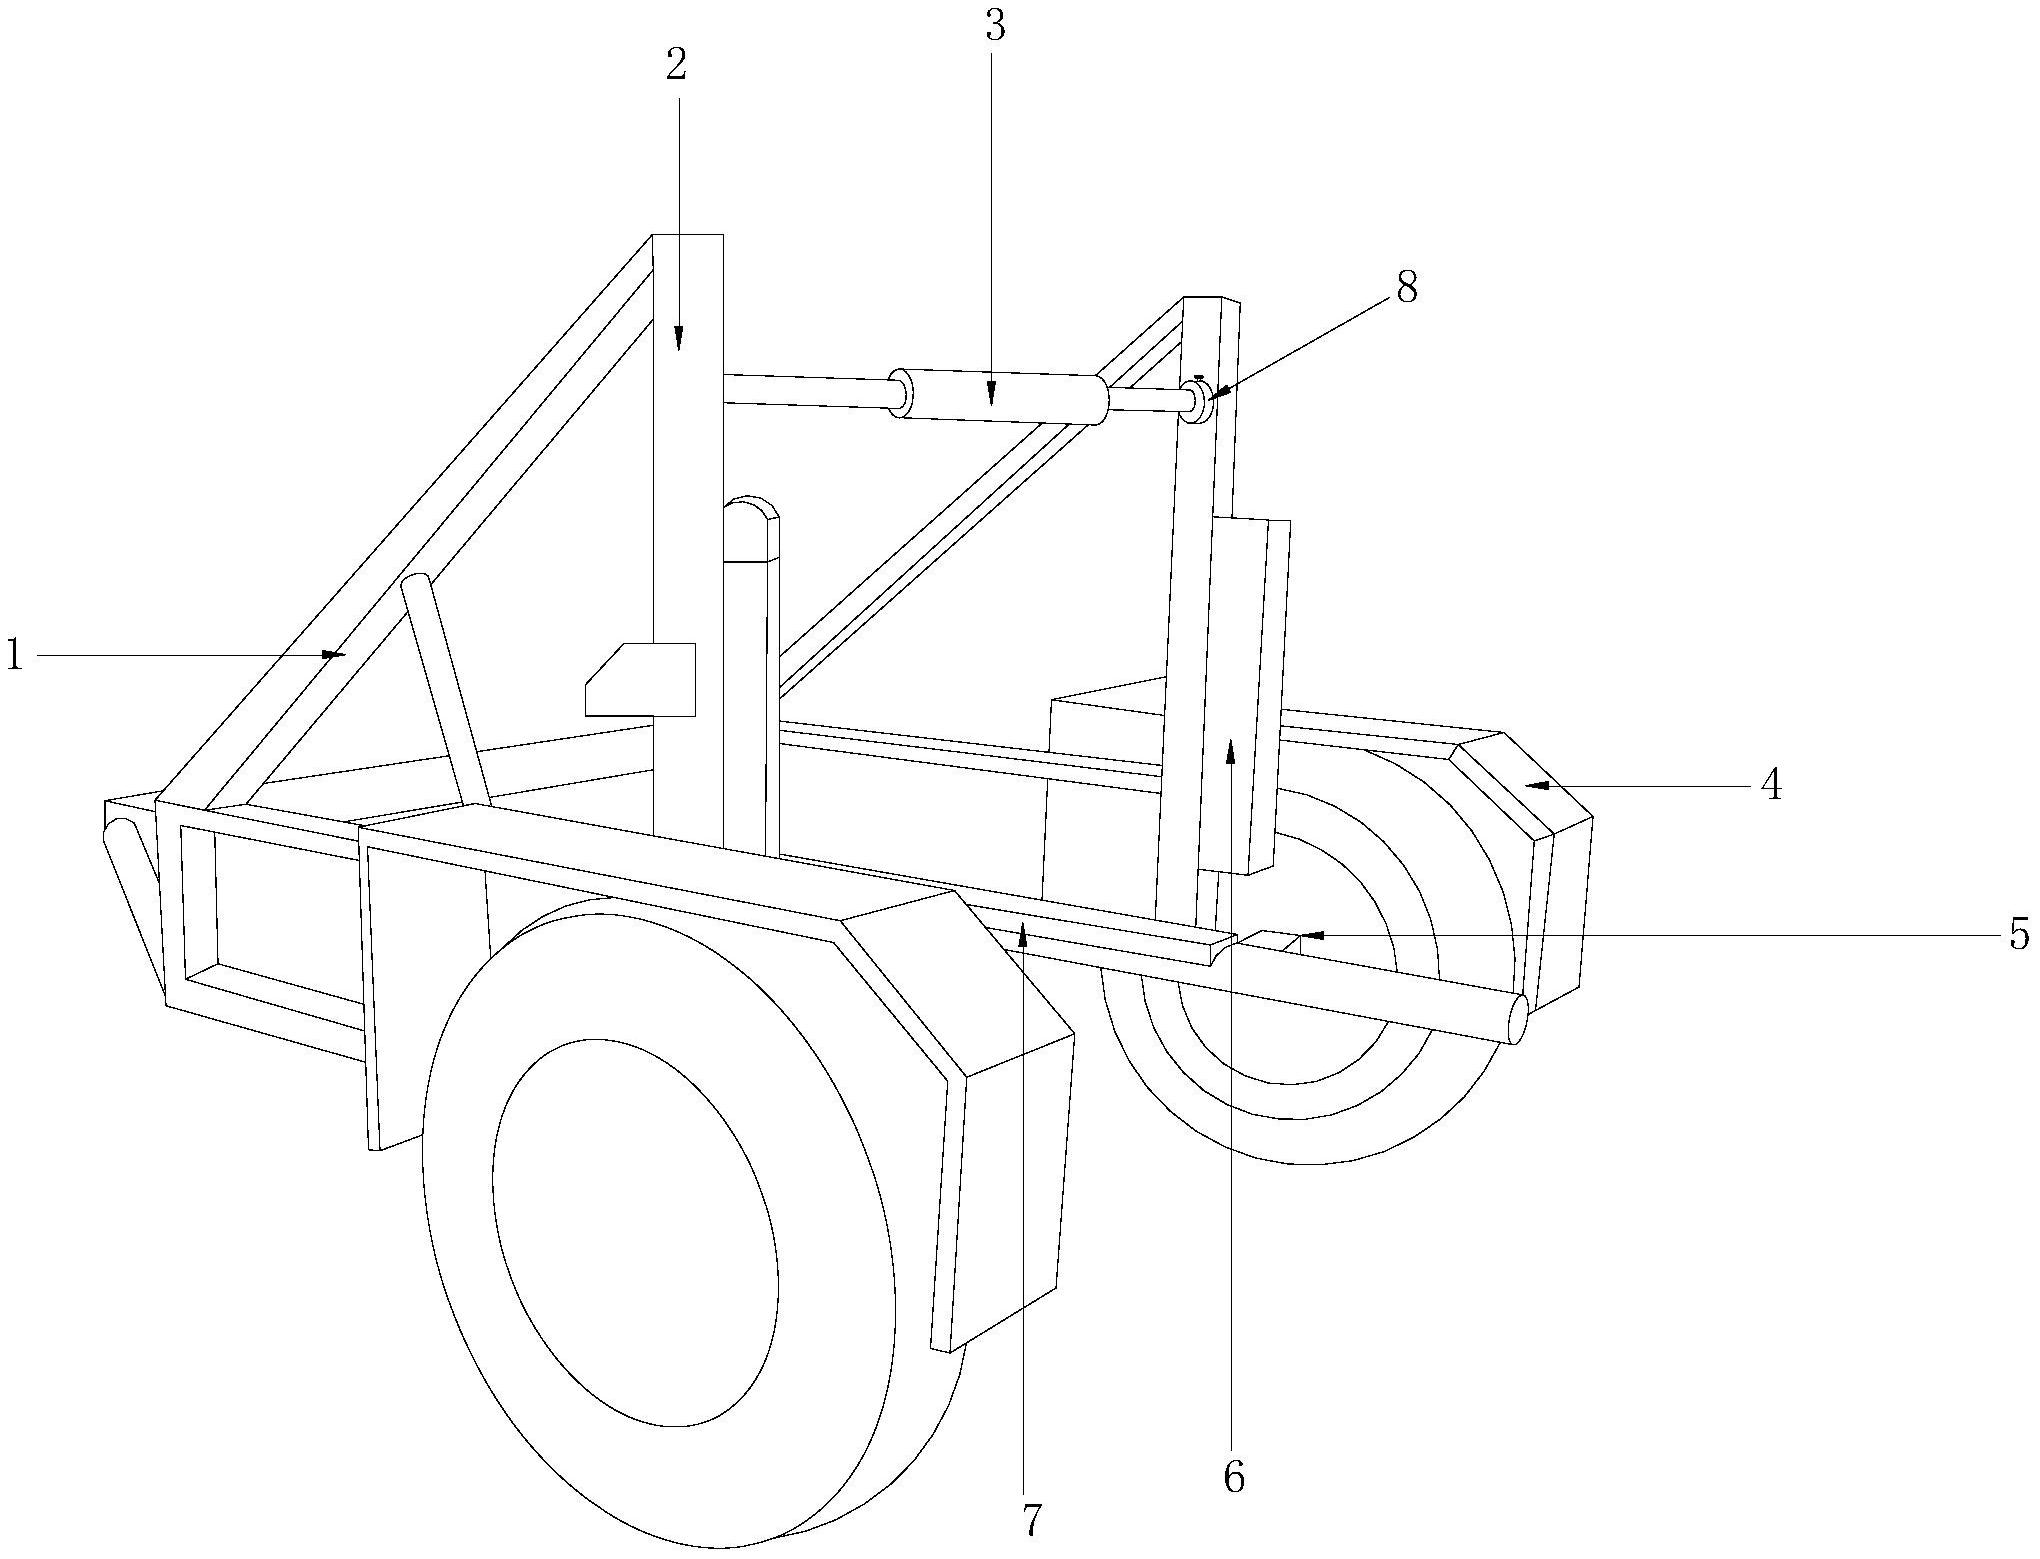 自制拖车设计 图纸图片